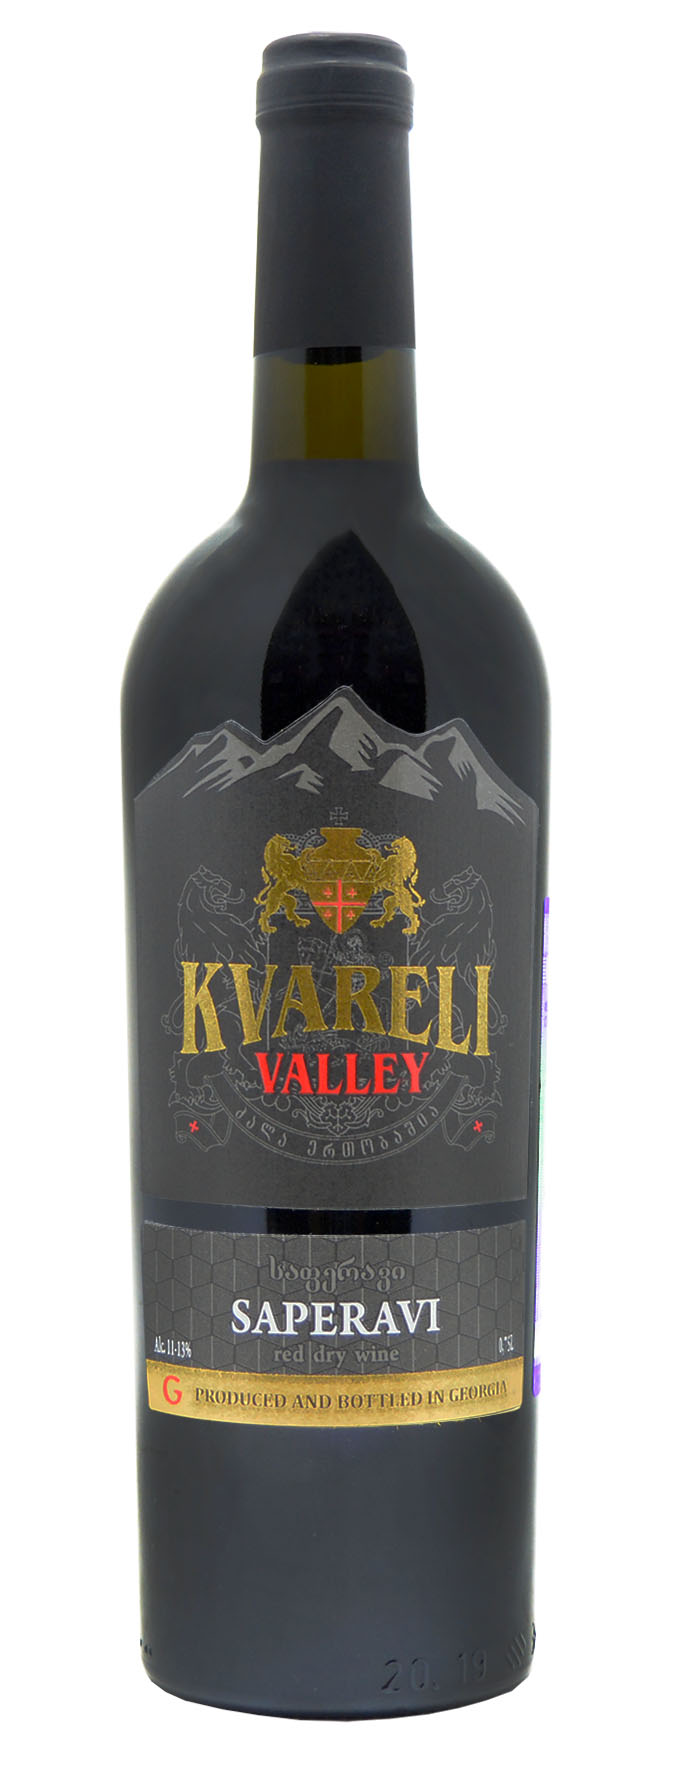 Вино «KVARELI VALLEY» ALAZANI VALLEY, красное полусладкое, столовое, 0,7 л.